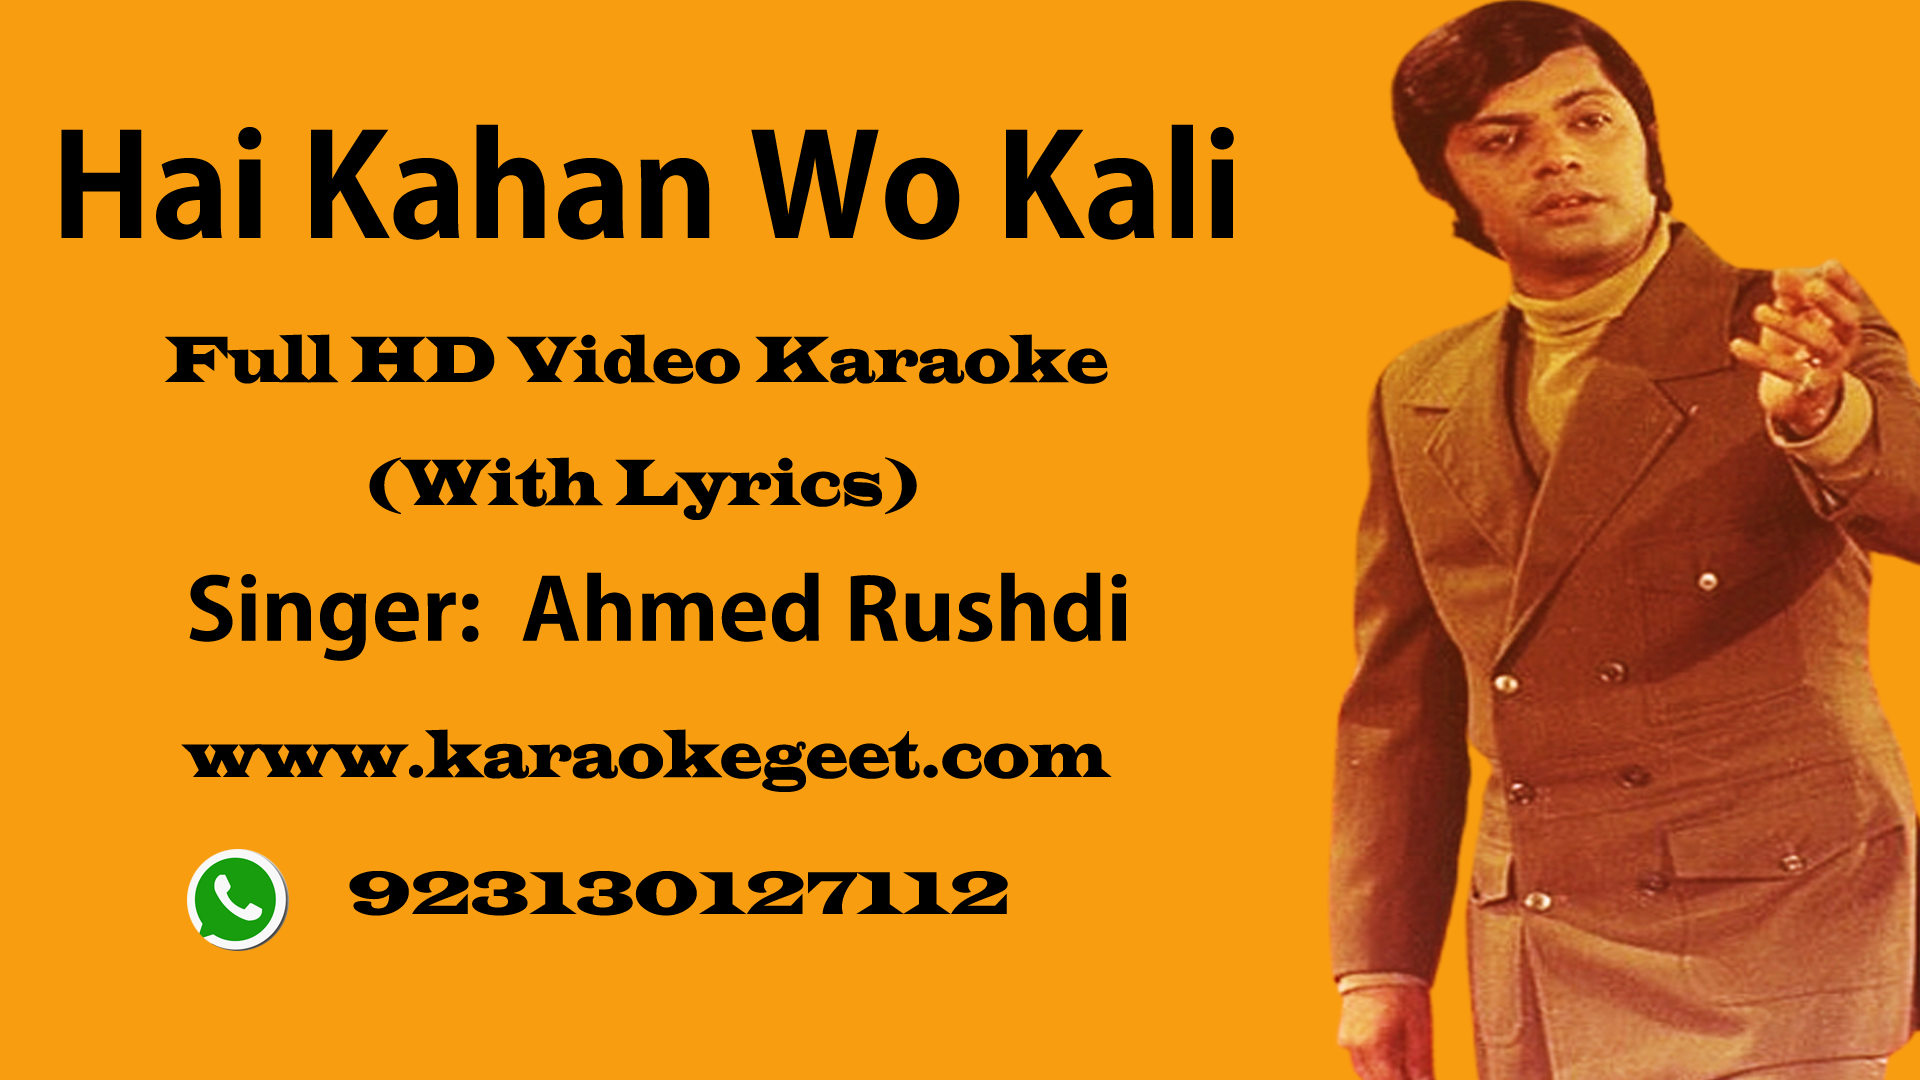 Hai kahan wo kali jo kabhi na mili Video Karaoke